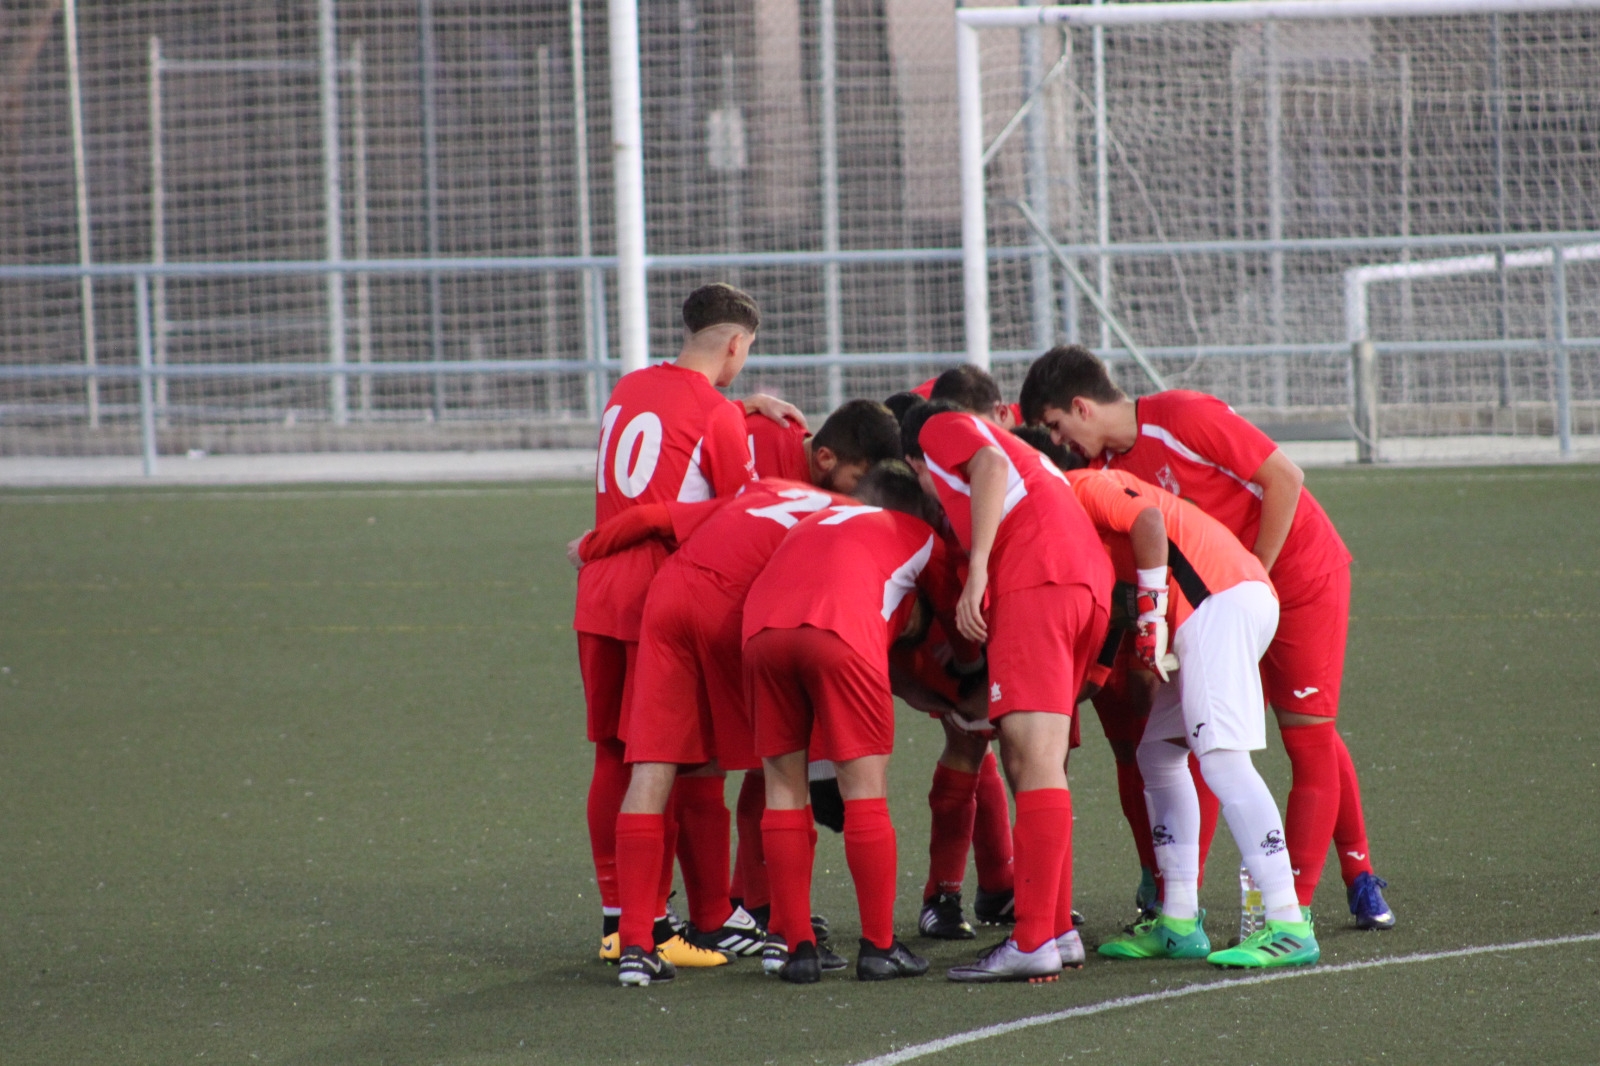 Nueva victoria 0-4 del Juvenil Nacional frente al Colegio Diocesano